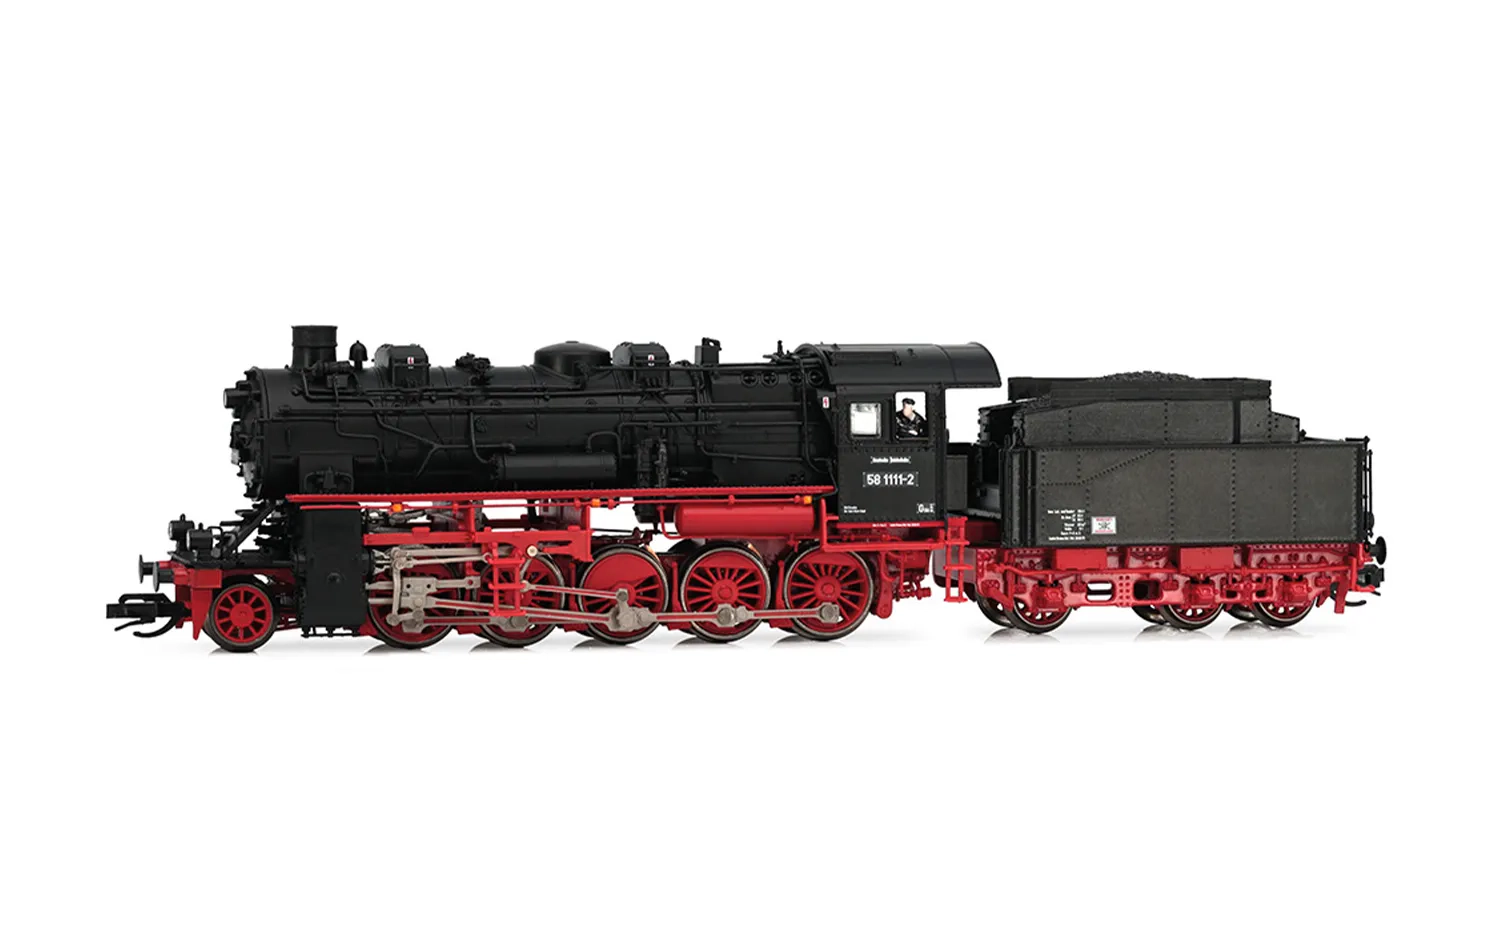 DR, locomotora de vapor 58 1111-2, caldera con 3 domos, 3 faros de cabeza, ép. IV